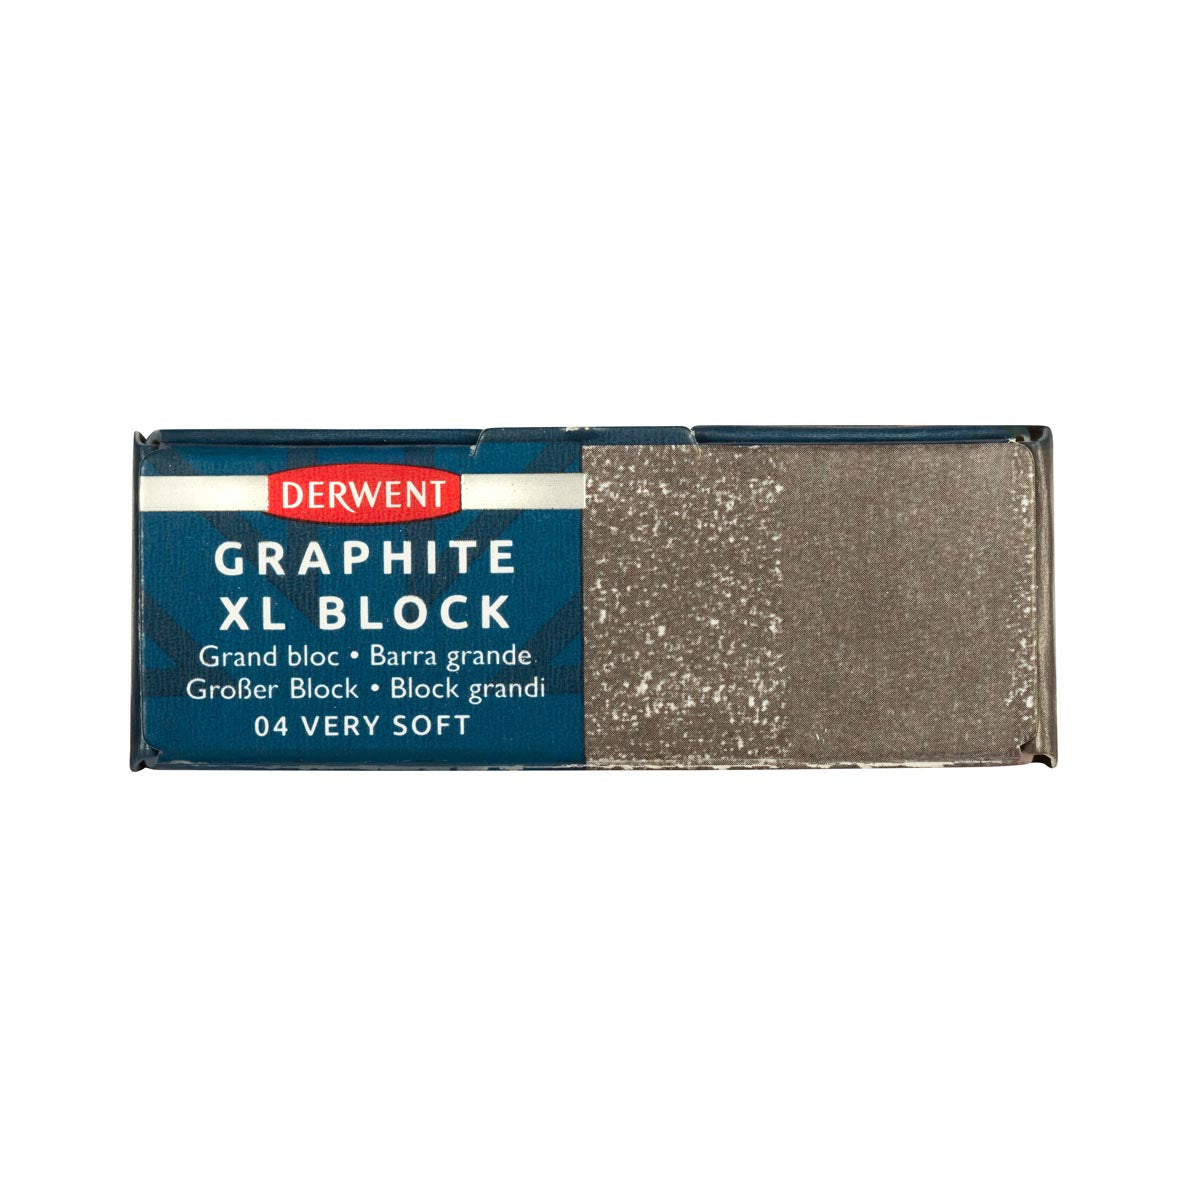 Derwent - Graphite XL Block - Very Soft